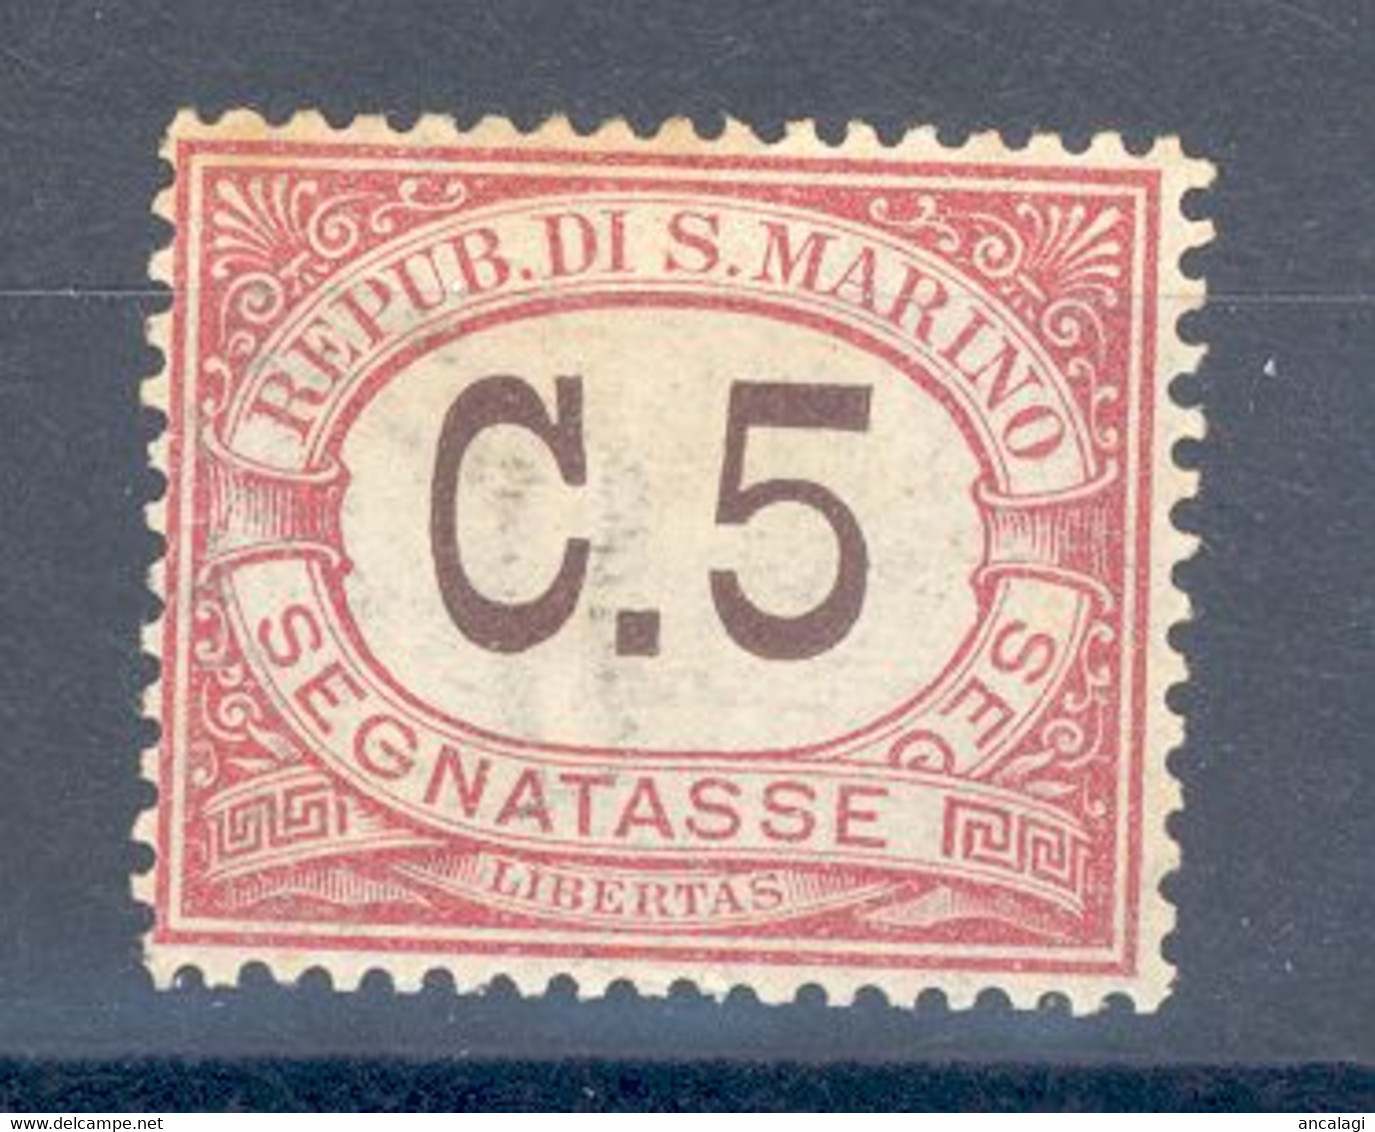 RSM F.lli Nuovi Segnatasse 006 - San Marino 1924 - 1v. C.5 - Portomarken